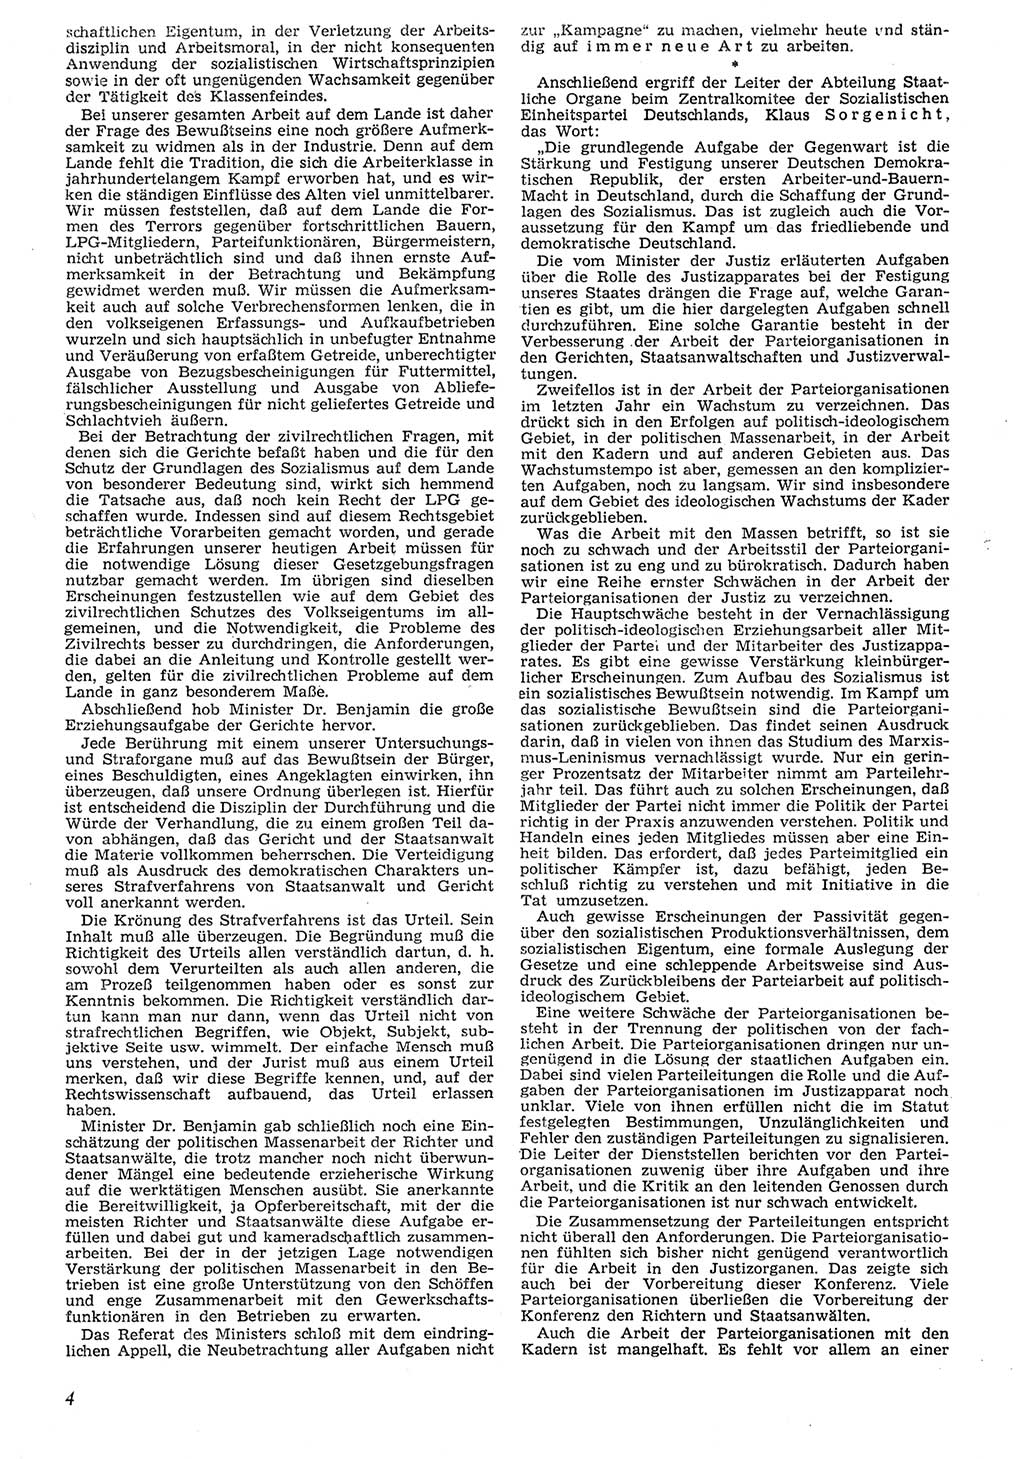 Neue Justiz (NJ), Zeitschrift für Recht und Rechtswissenschaft [Deutsche Demokratische Republik (DDR)], 10. Jahrgang 1956, Seite 4 (NJ DDR 1956, S. 4)